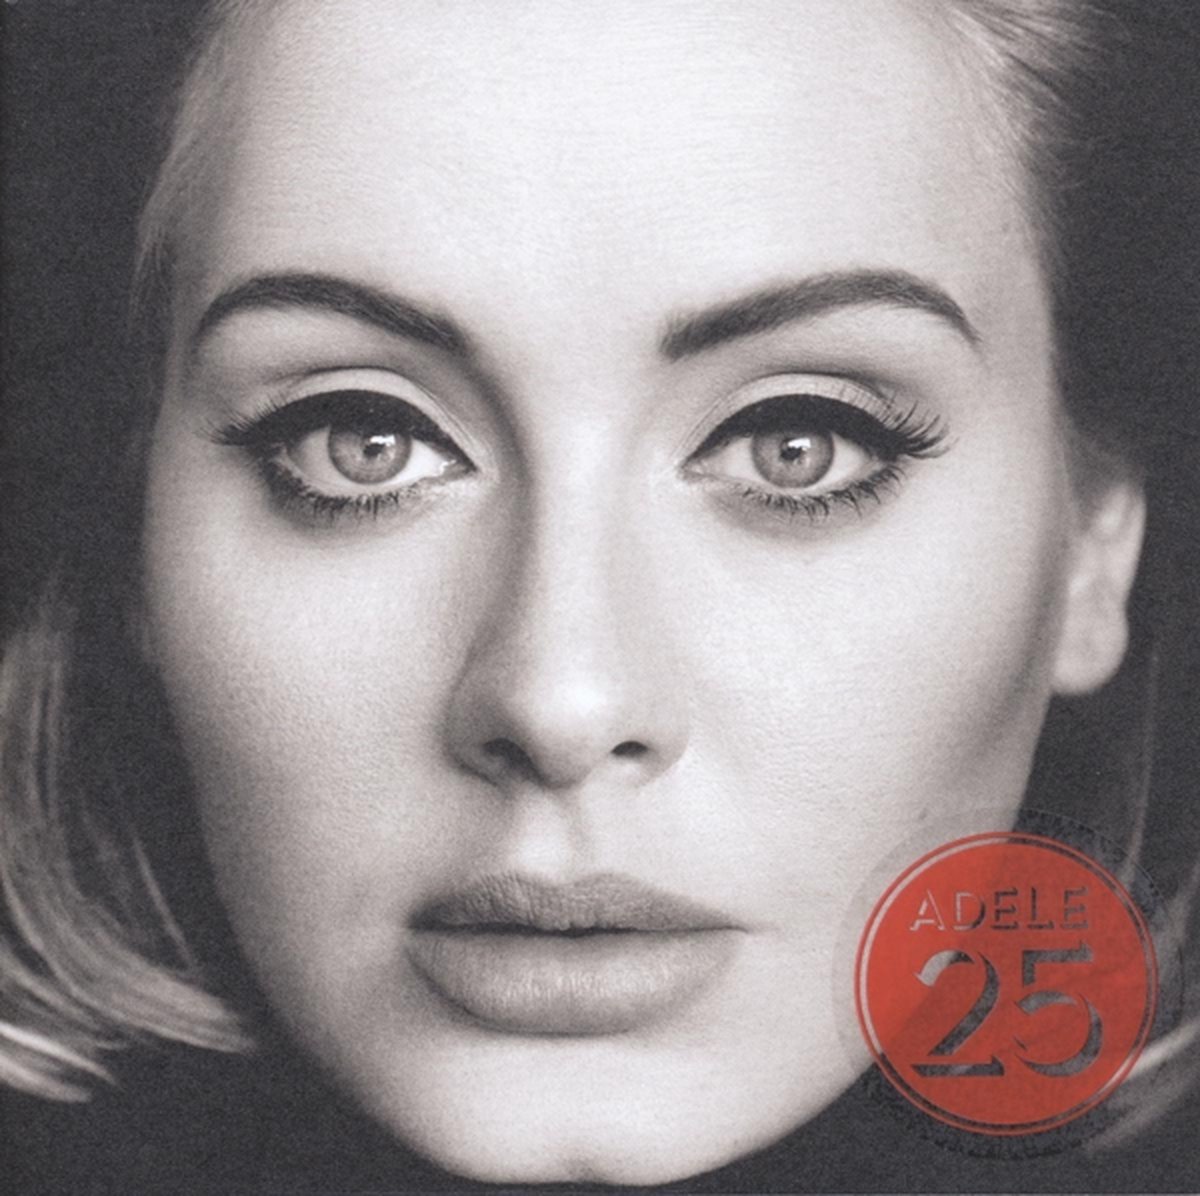 25 (CD) - Adele